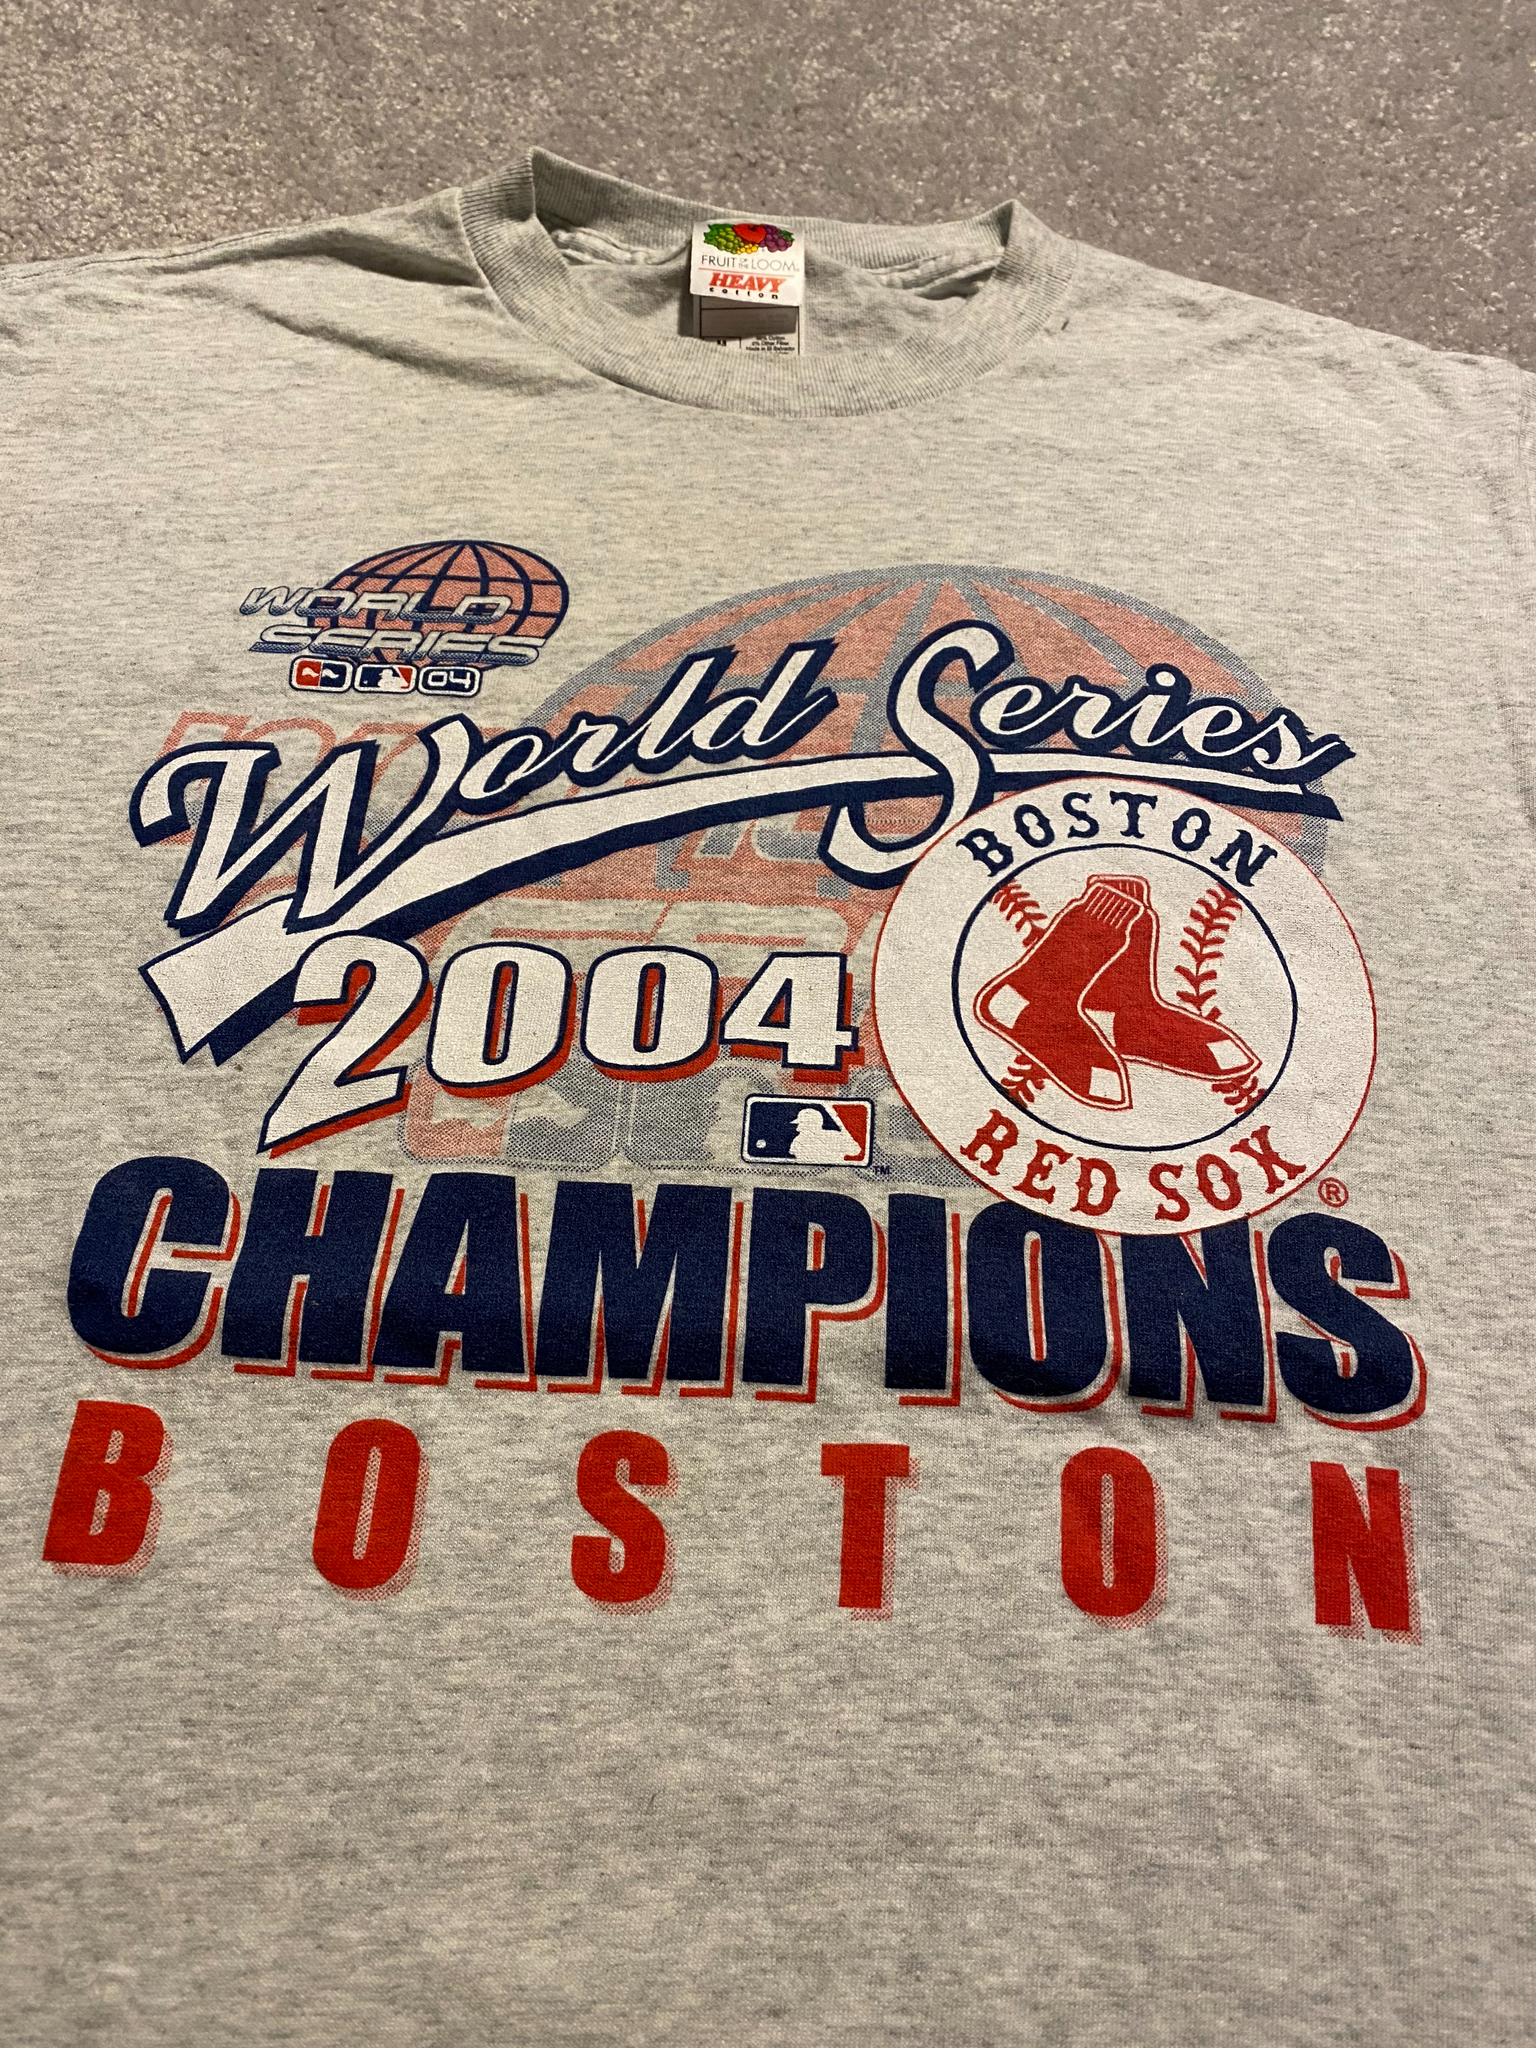 Vintage ish 2007 Boston Red Sox World Series Champions TSHIRT - M